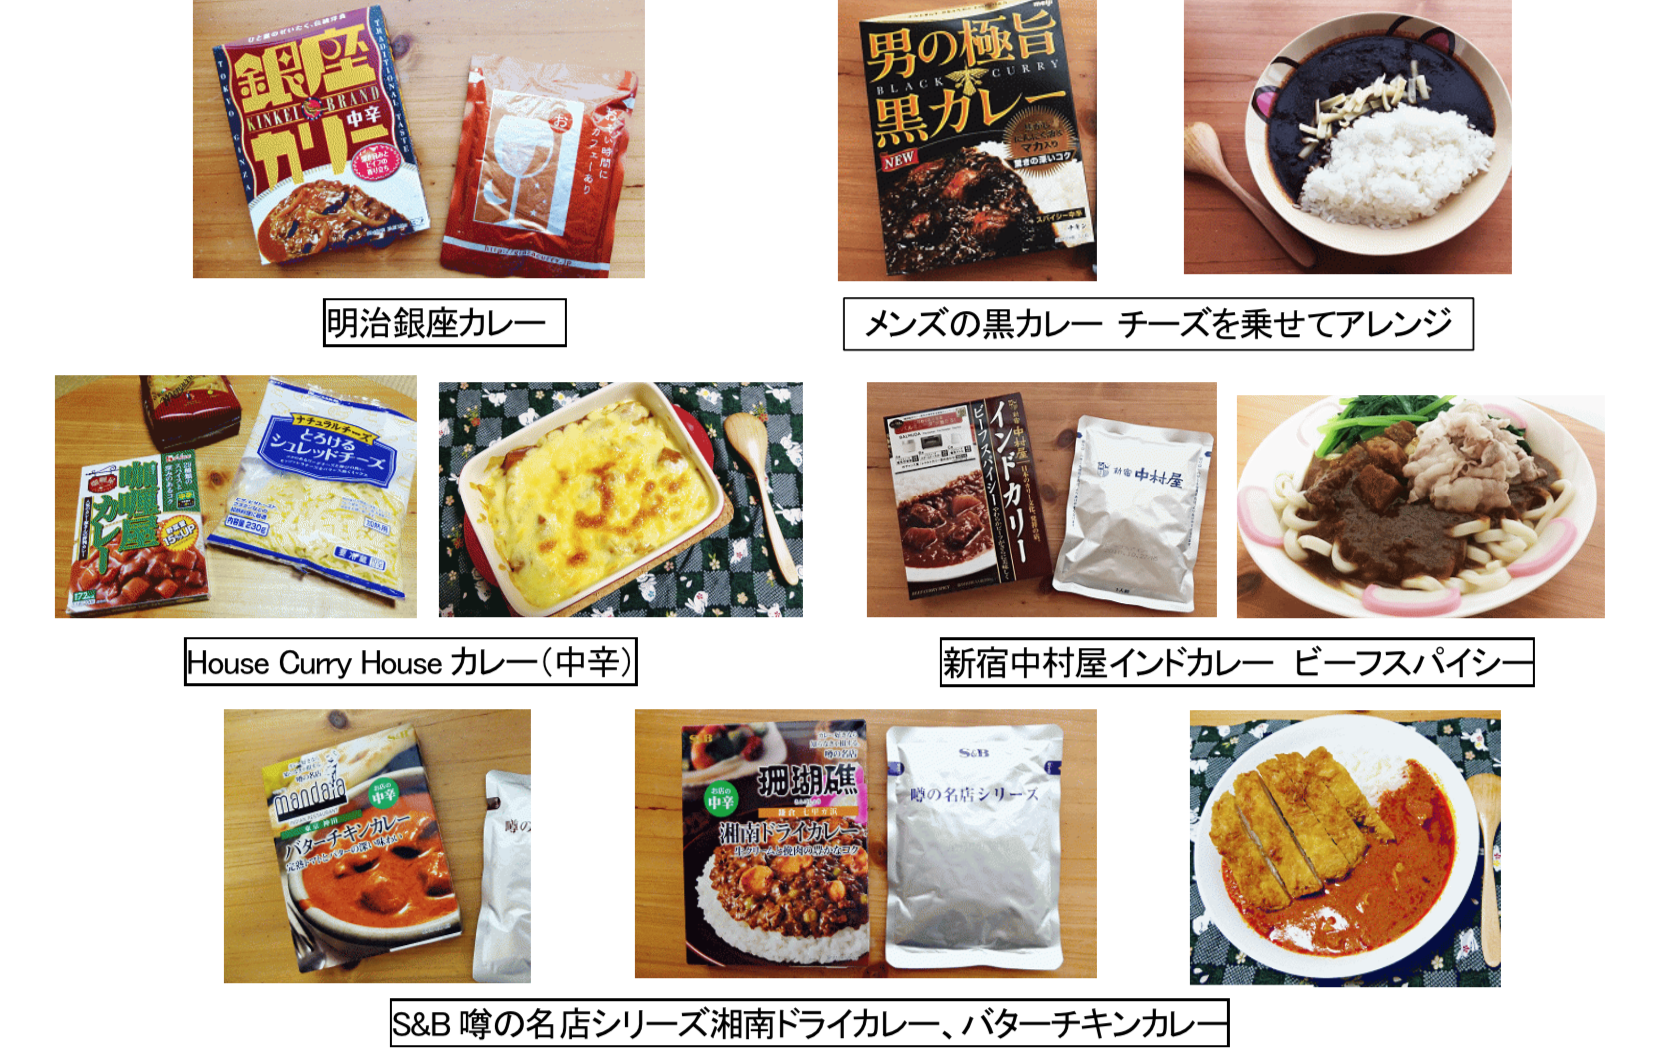 銀座コージーコーナー、2月15日にディズニープリンセスデザインの「ひなまつり」限定プチケーキセットを発売